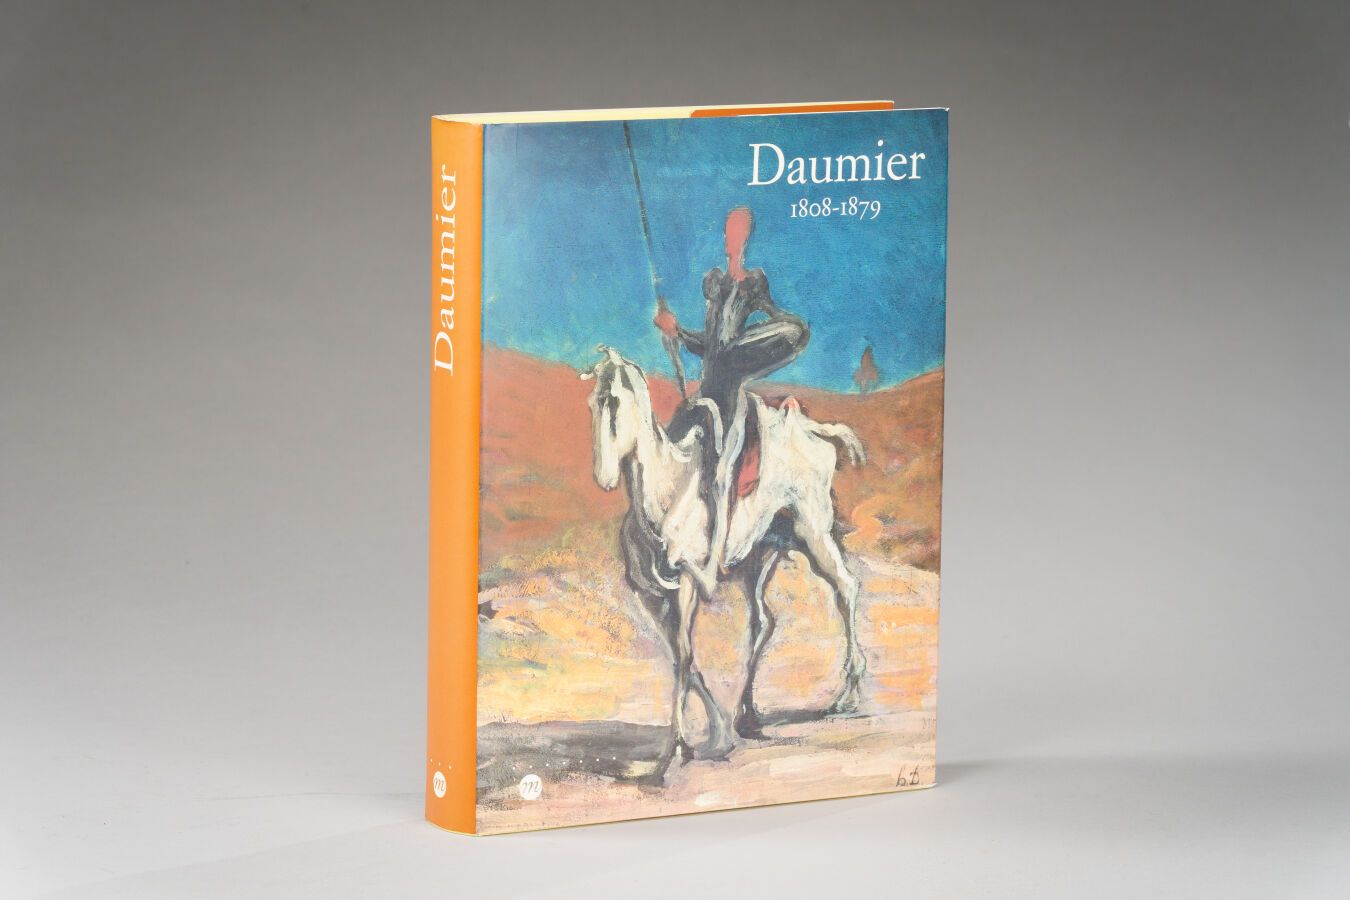 Null 5. DAUMIER, 1808-1879, Riunione dei musei

Nationaux, Parigi 1999, 1 vol.